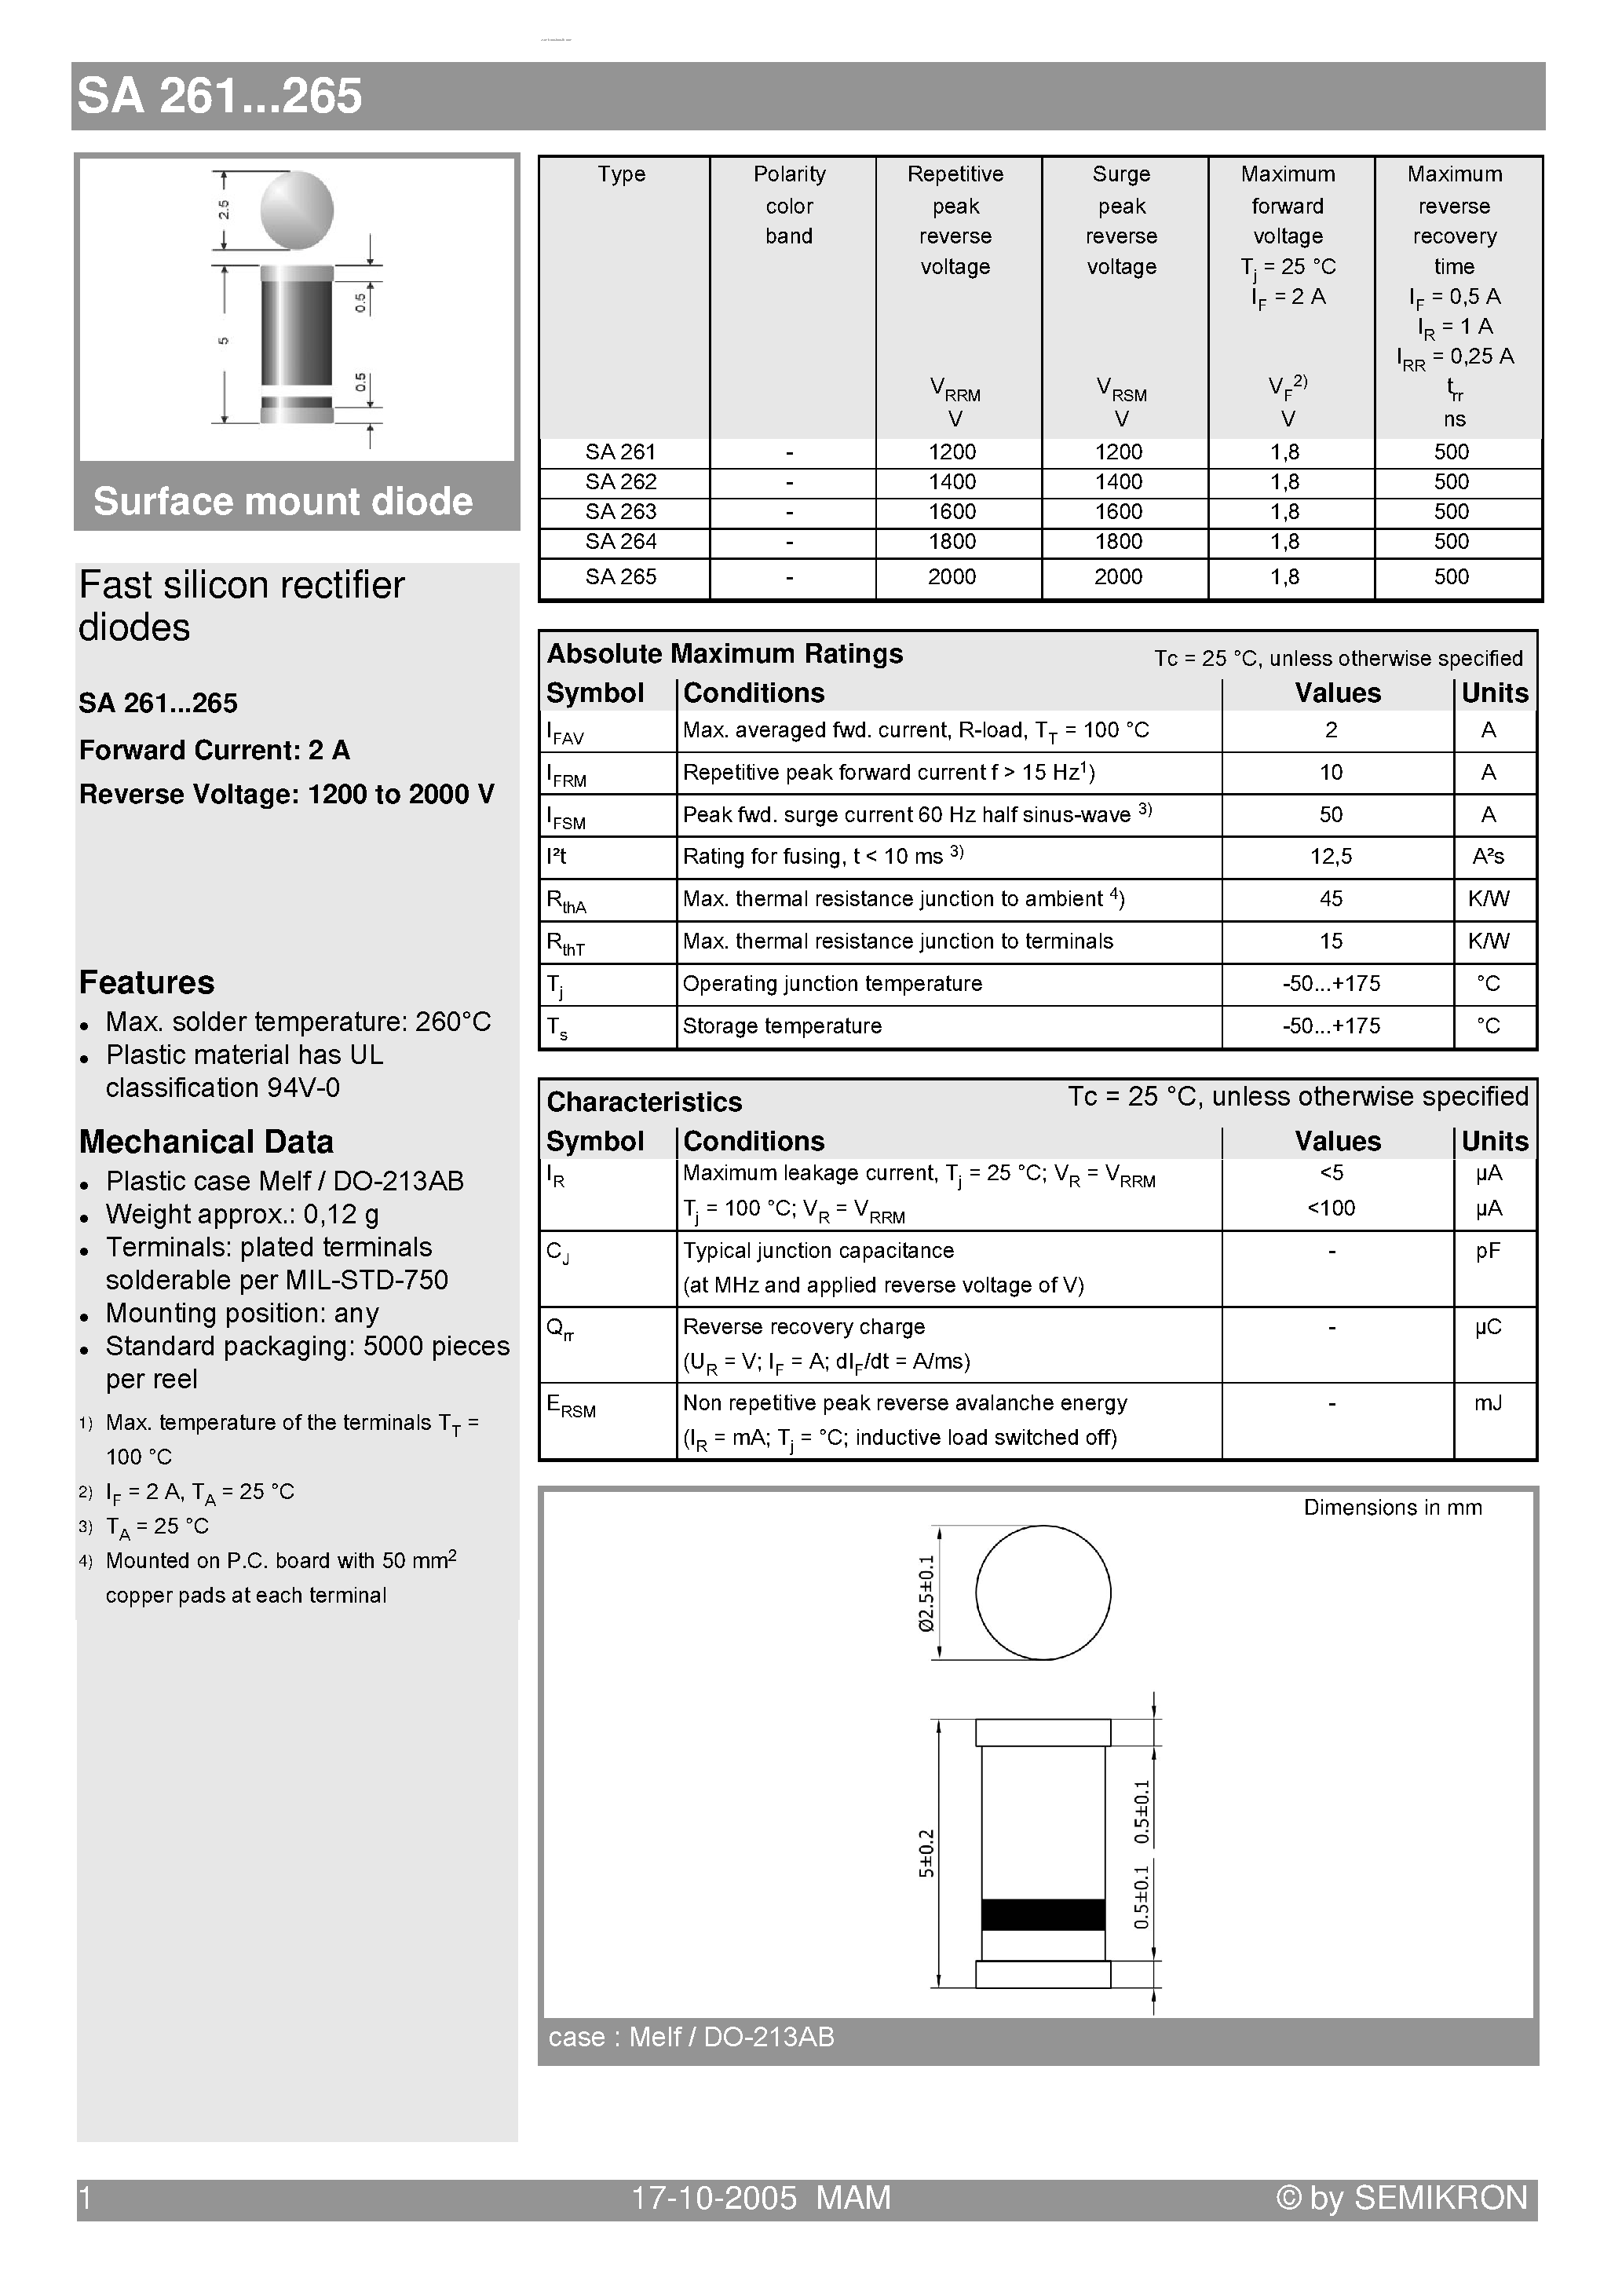 Datasheet SA261 - (SA261 - SA265) Fast silicon rectifier diodes page 1